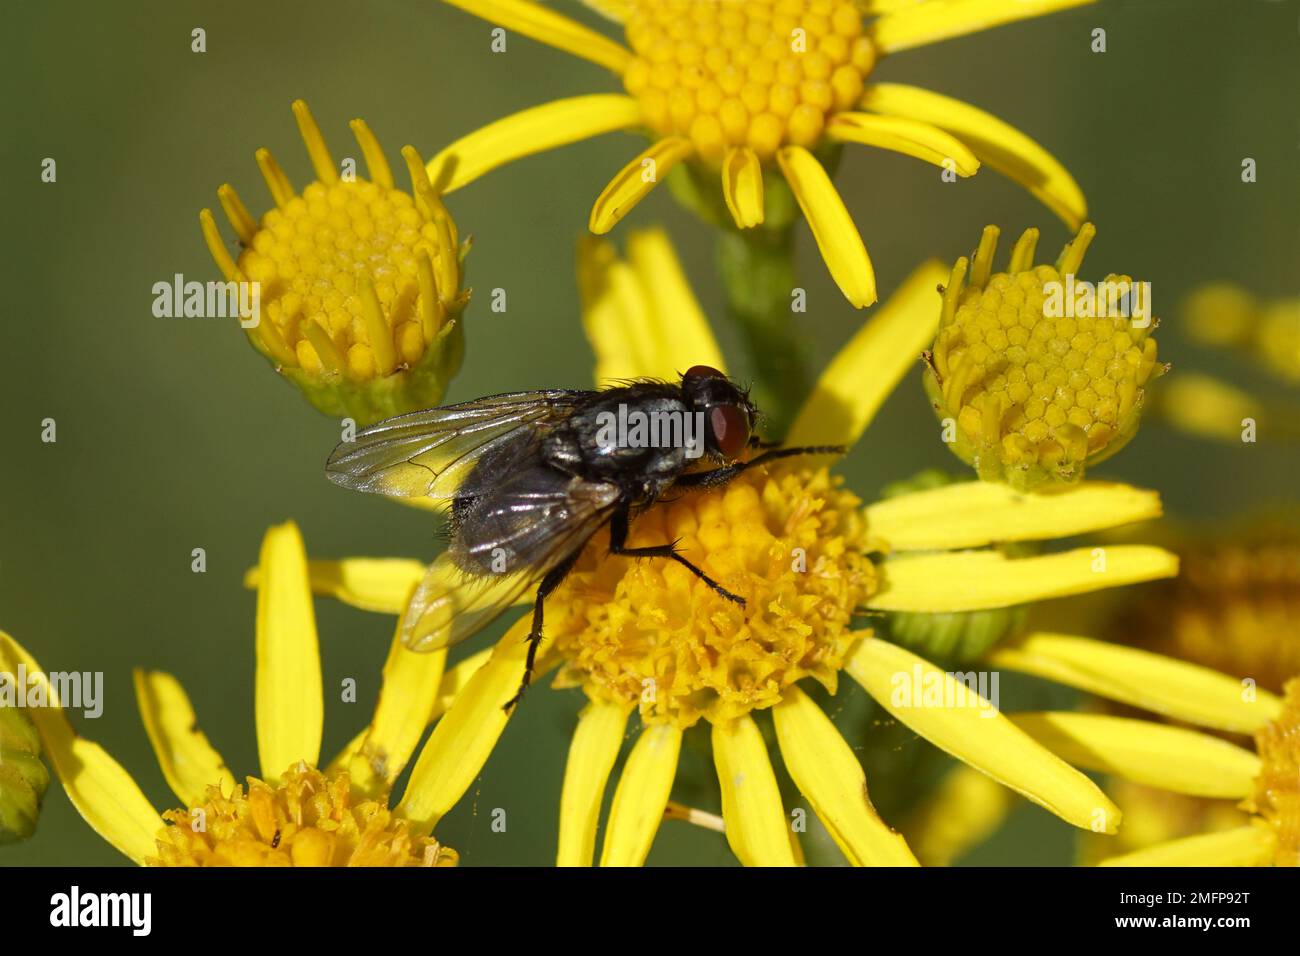 Weibliche Fliege Morellia, Familienhausfliegen (Muscidae) auf den Blüten von Ragwurz (Senecio jacobaea), Familie Asteraceae oder Asteraceae. Sommer Stockfoto